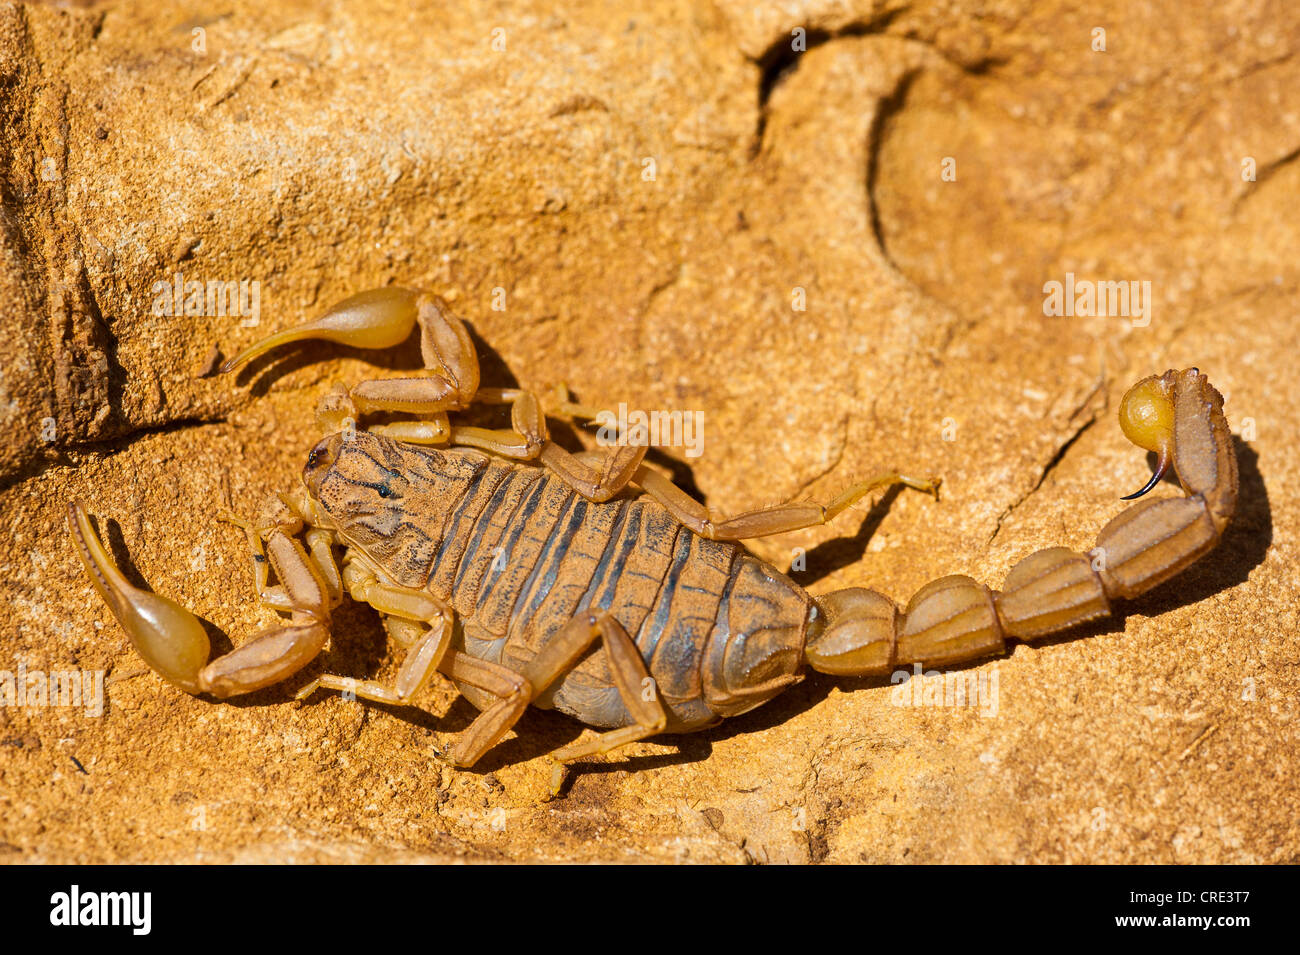 Scorpion Buthus occitanus (champ) sur une dalle de pierre, Moyen Atlas, Maroc, Afrique Banque D'Images